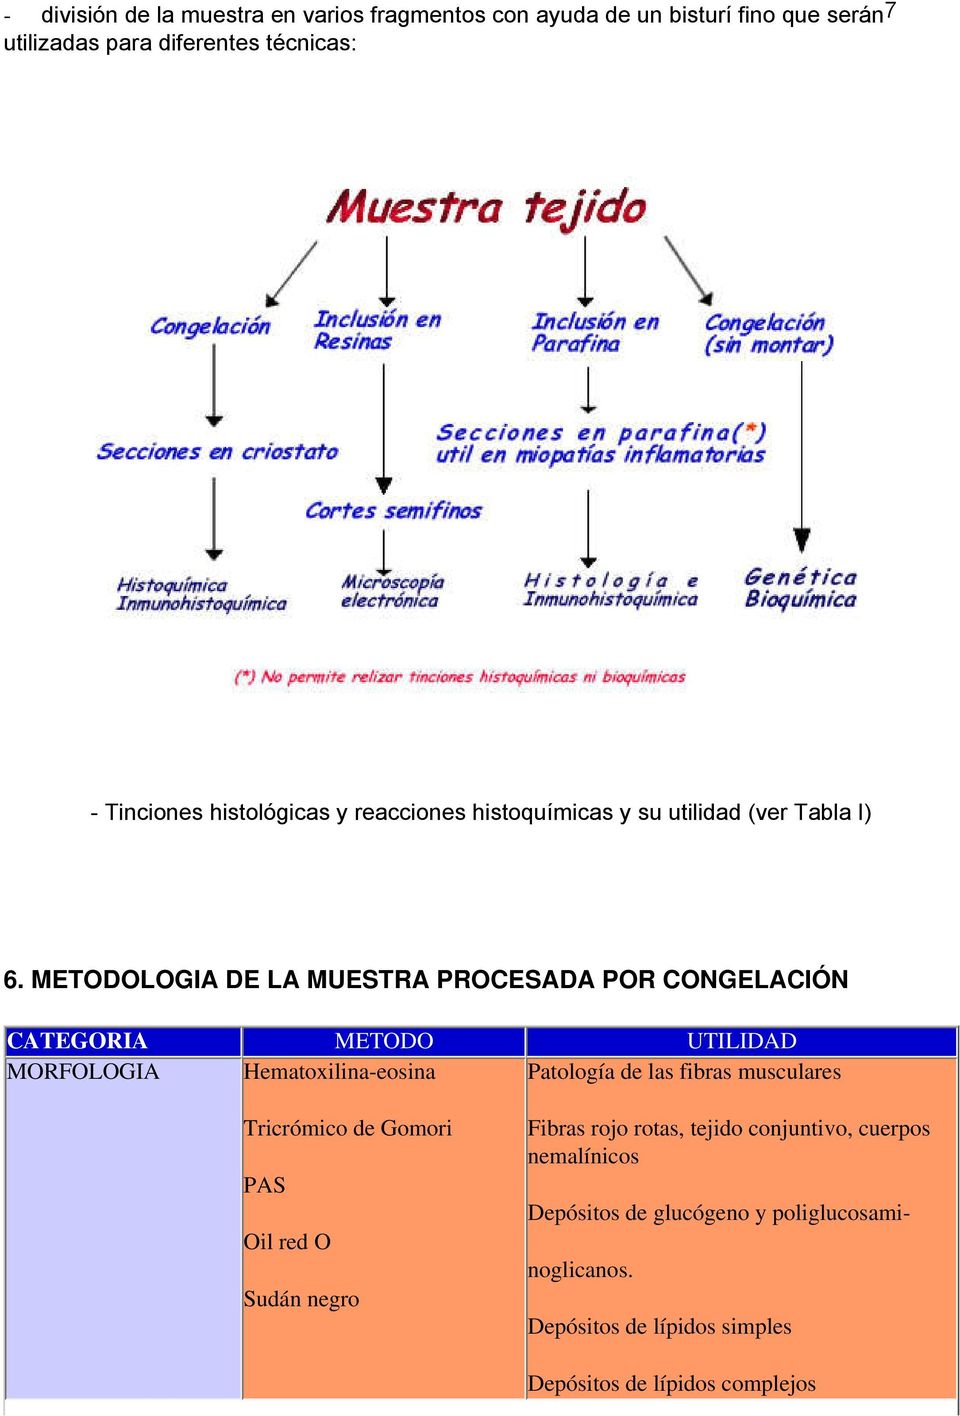 METODOLOGIA DE LA MUESTRA PROCESADA POR CONGELACIÓN CATEGORIA METODO UTILIDAD MORFOLOGIA Hematoxilina-eosina Patología de las fibras